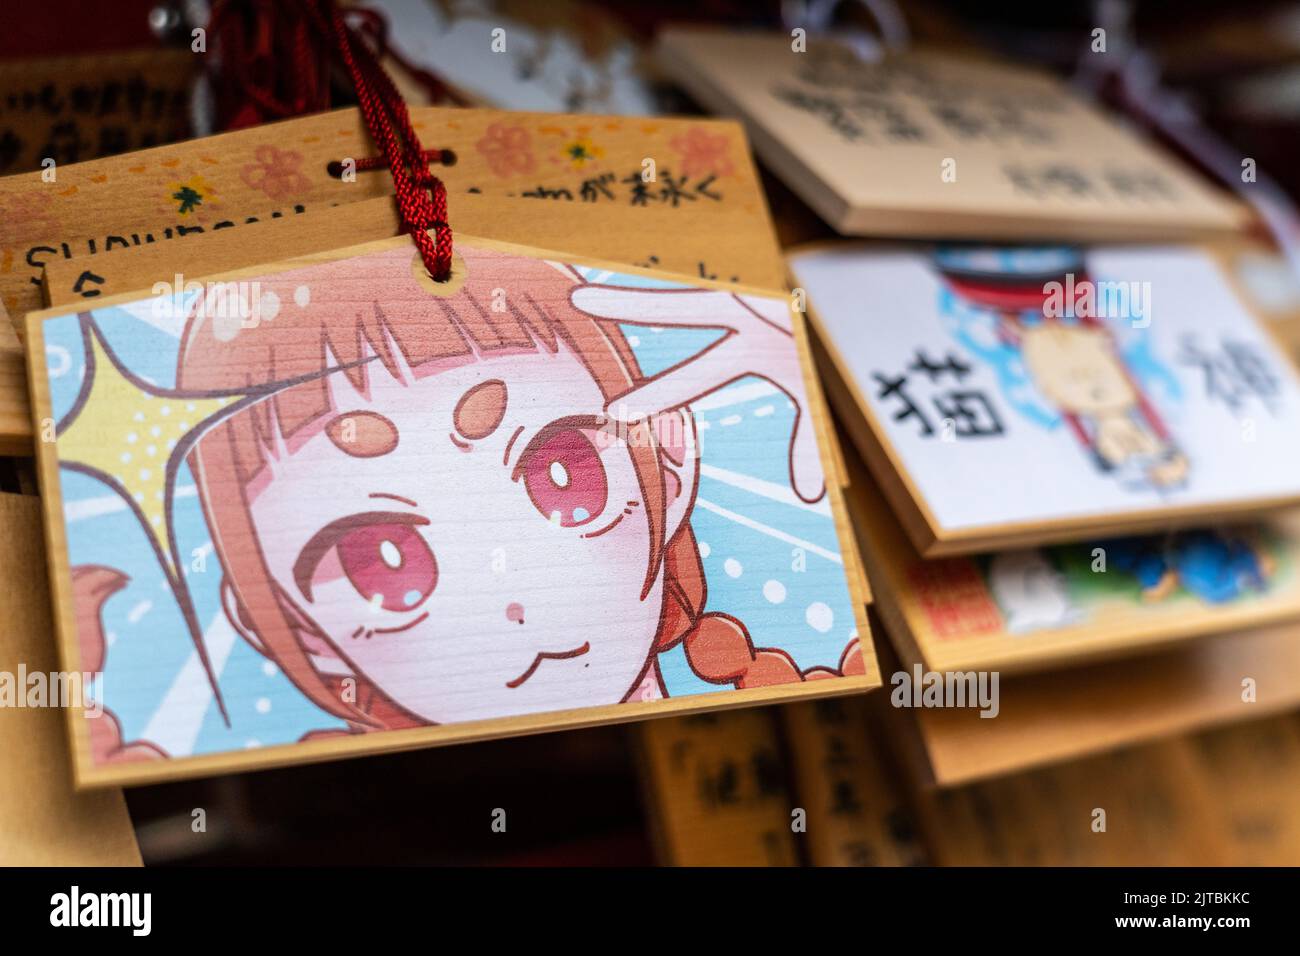 Japanische Anime- und Manga-Figuren, die auf ema-Gebetstafeln am Kanda Myojin-Schrein gemalt sind, einem schintoistischen Schrein, der Geschäftsreisenden und Technikbegeisterten in Chiyoda, Tokio, Japan, gewidmet ist. Die Gläubigen hängen die Tafeln mit ihren Wünschen, Träumen oder Gebeten im Tempel auf. Stockfoto